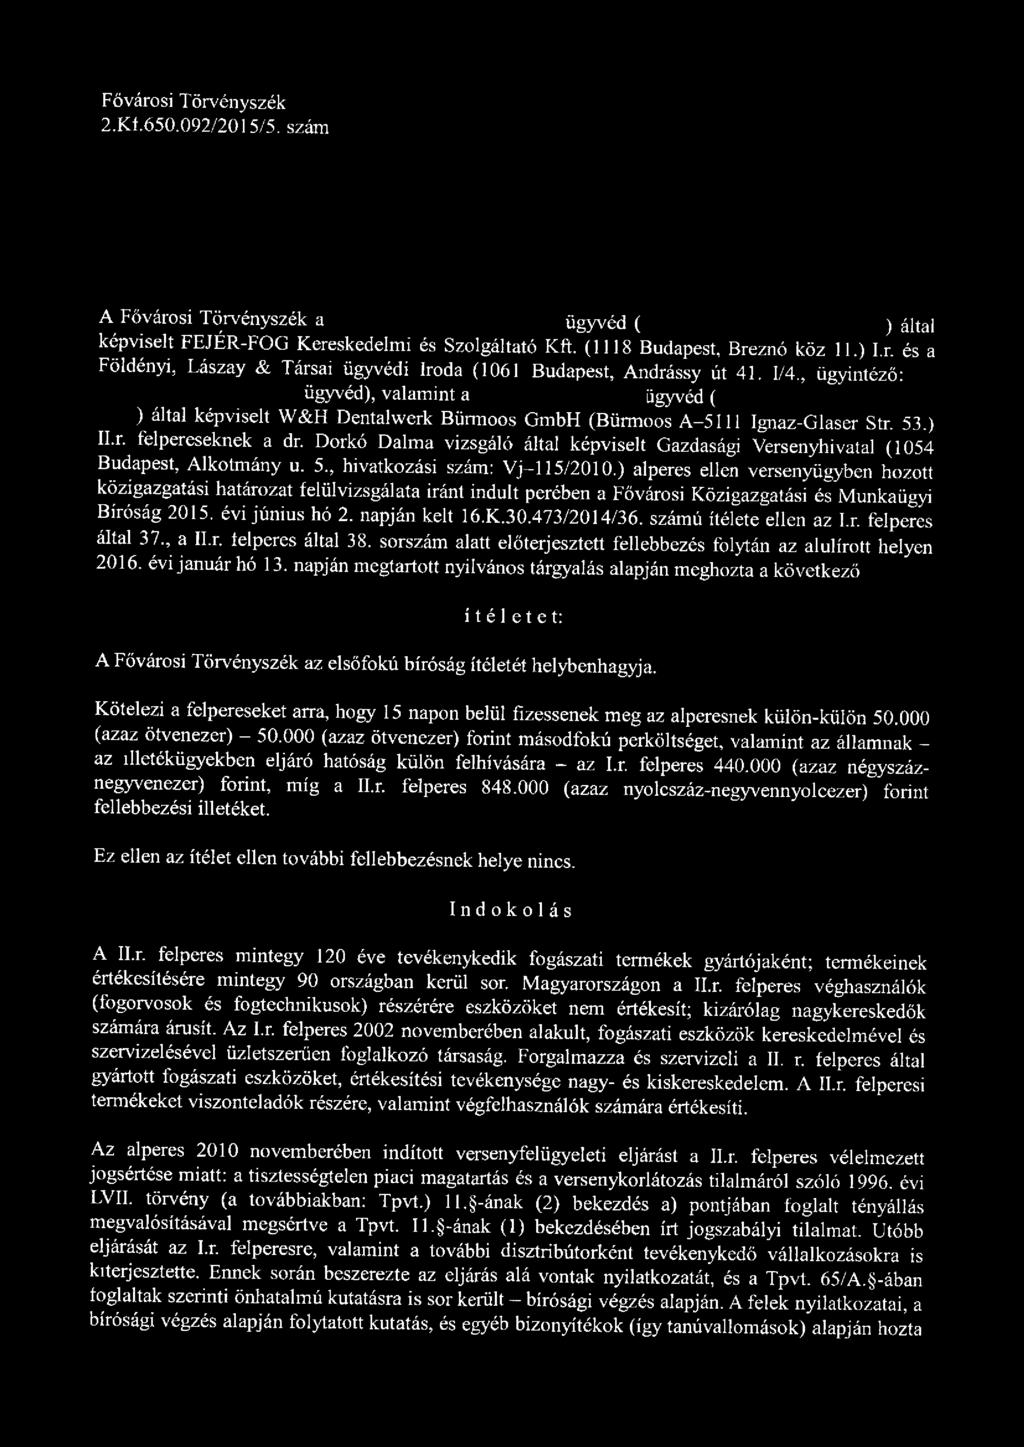 Dorkó Dalm a vizsgáló által képviselt Gazdasági Versenyhivatal (1054 Budapest, Alkotm ány u. 5., hivatkozási szám: V j-1 15/2010.